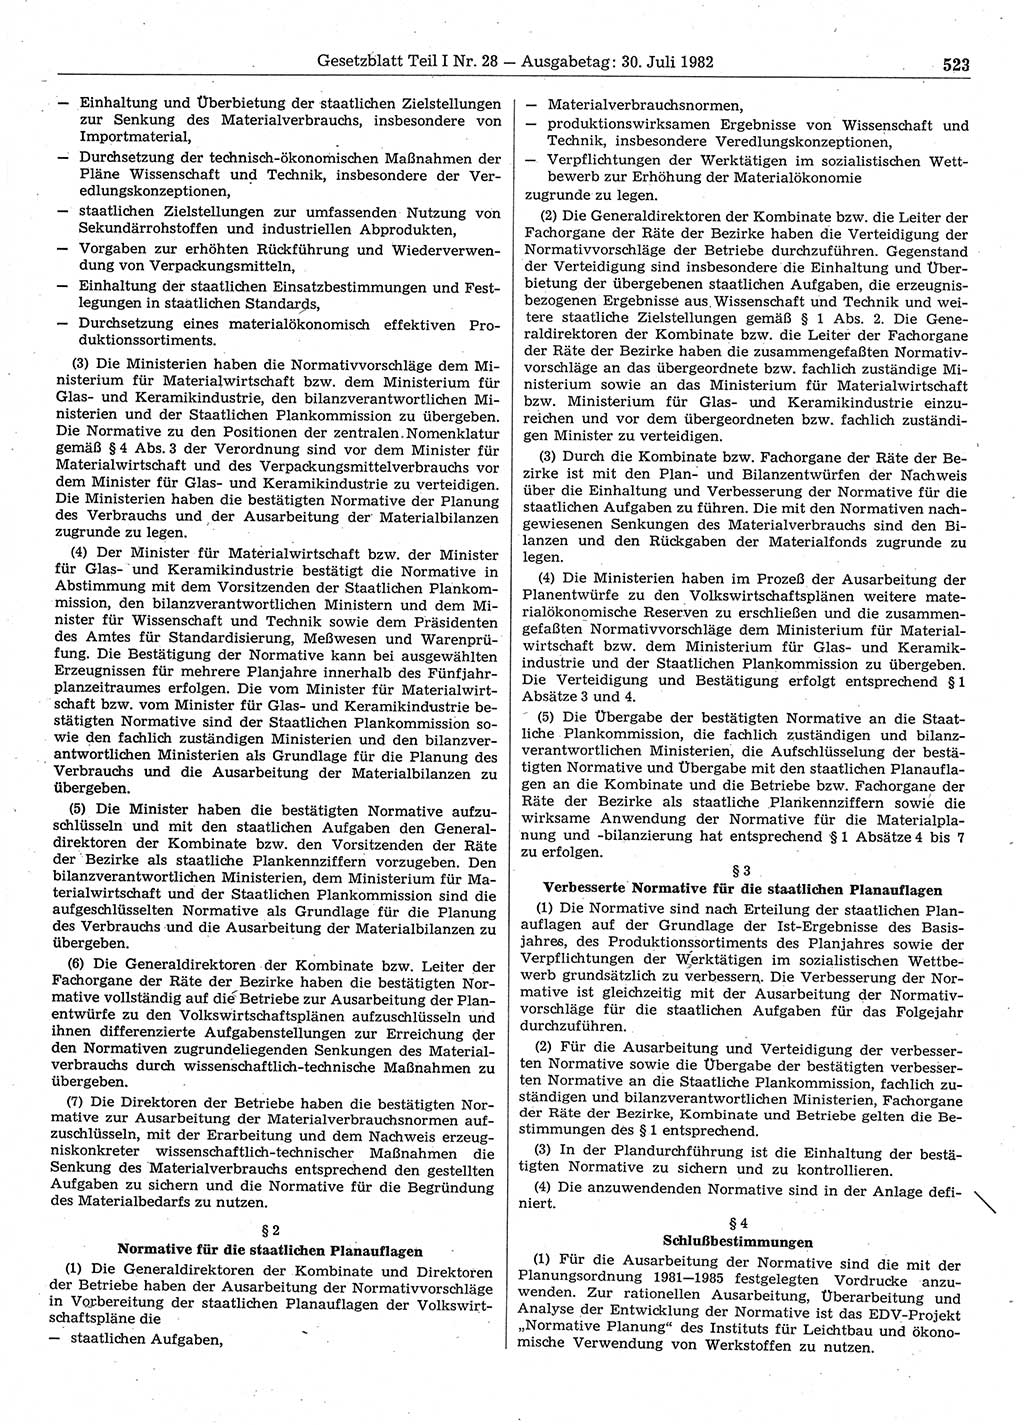 Gesetzblatt (GBl.) der Deutschen Demokratischen Republik (DDR) Teil Ⅰ 1982, Seite 523 (GBl. DDR Ⅰ 1982, S. 523)